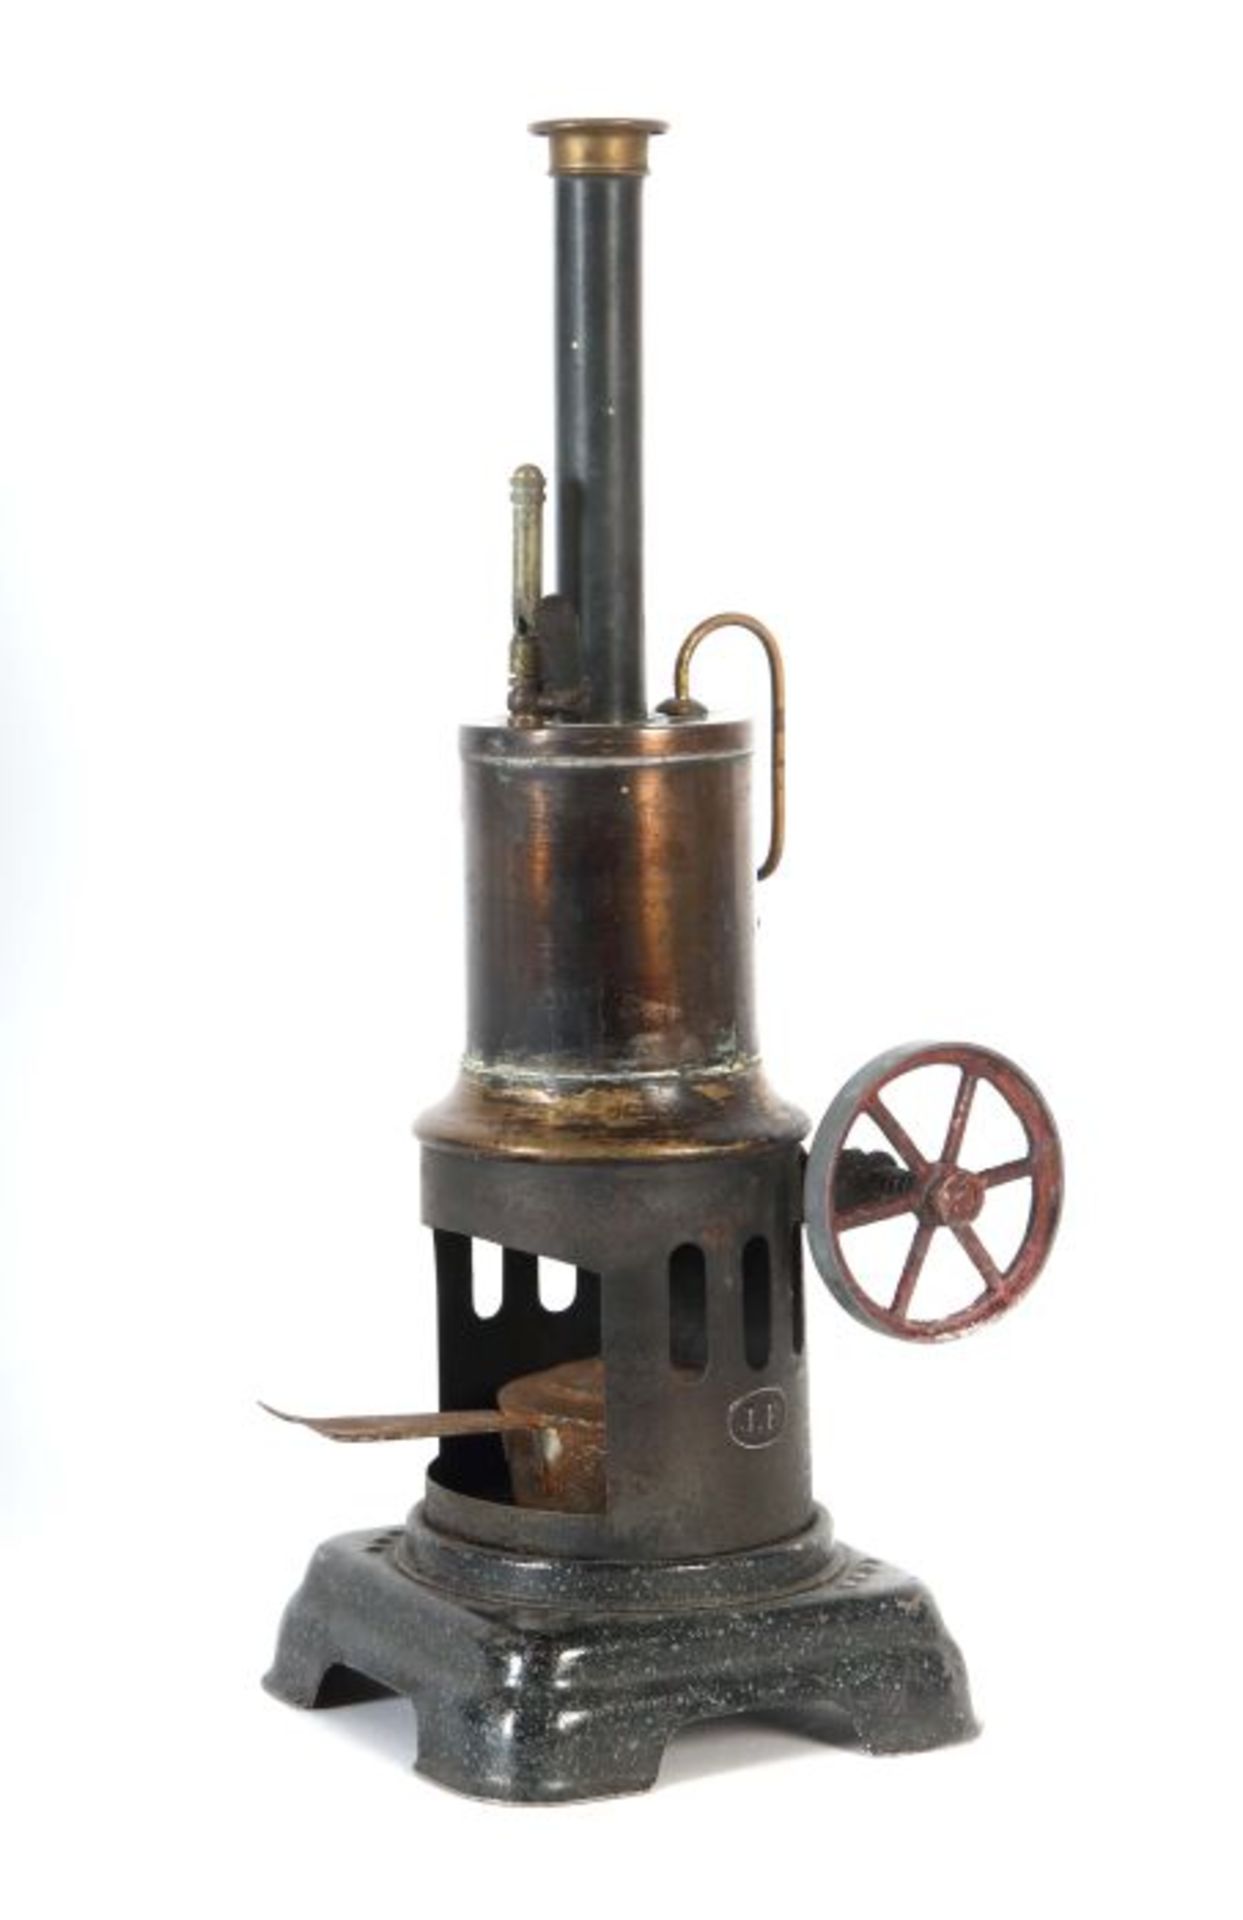 Stehende Dampfmaschine J. Falk, wohl Nr. 1460, ca. 1935, geschwärzter stehender Kessel, Ventil und